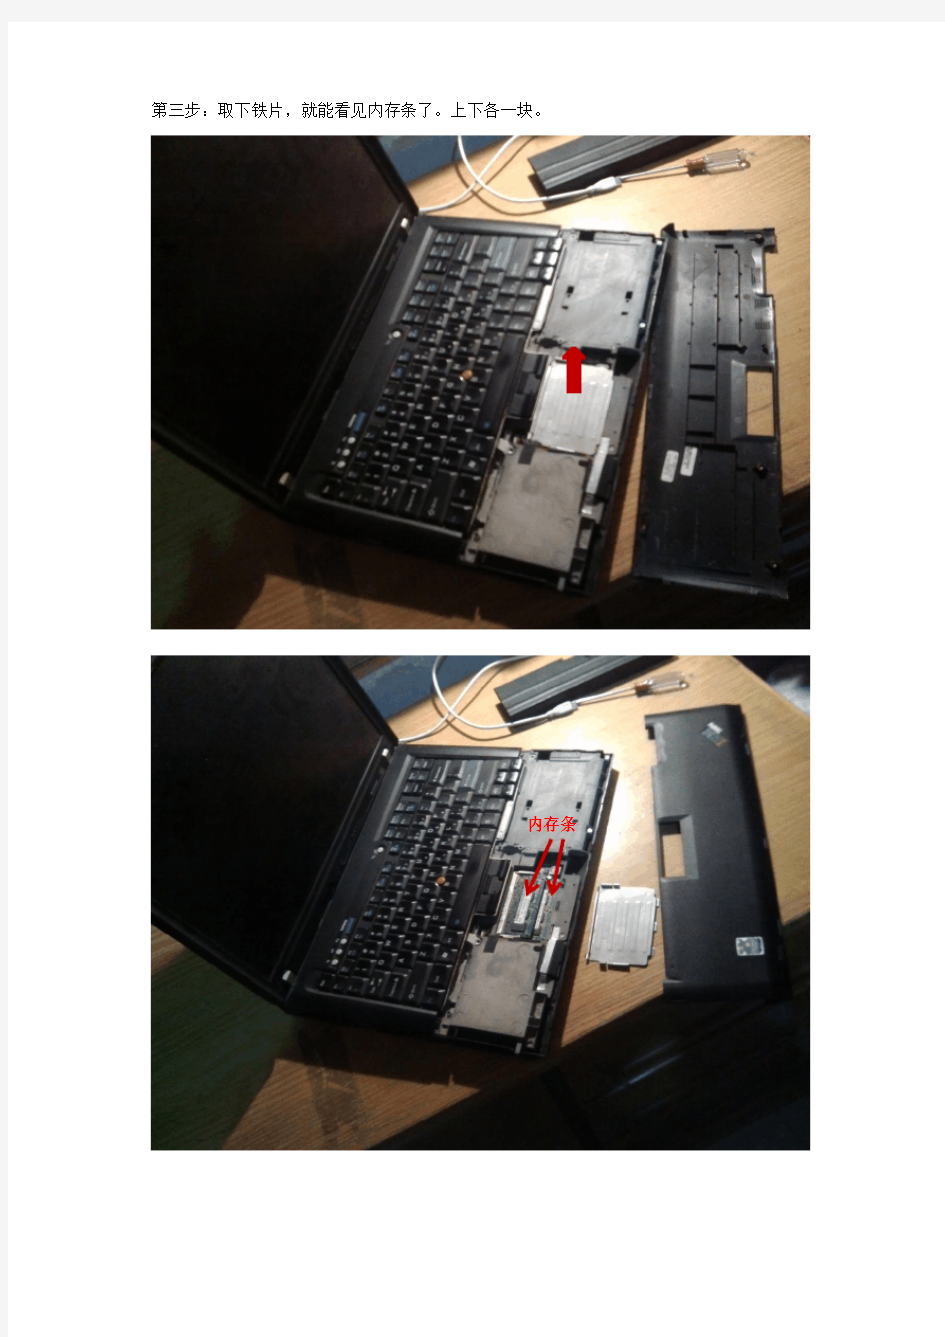 联想笔记本电脑R60i 拆机教程